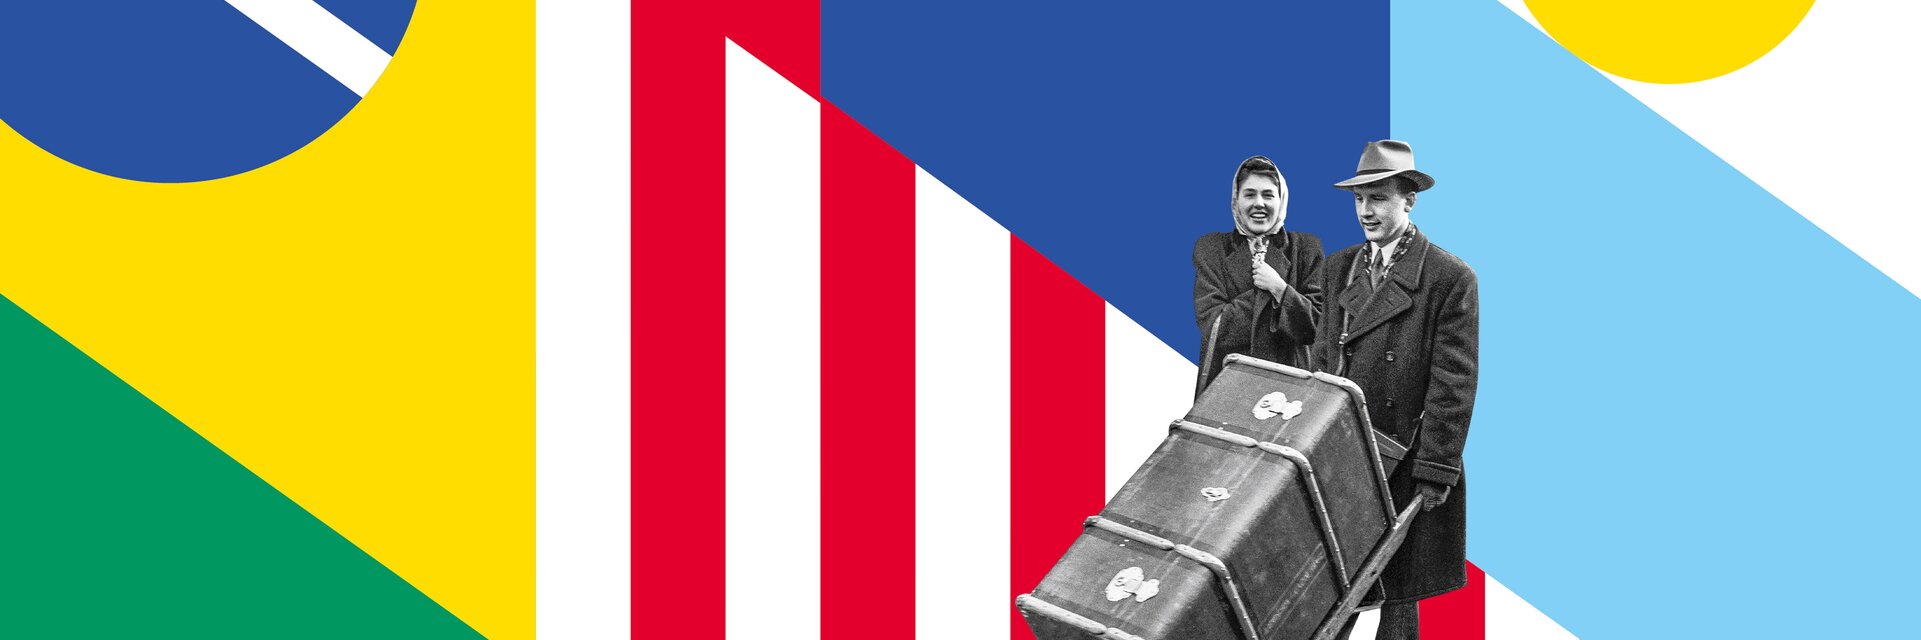 Immagine chiave della mostra "Svizzera Altrove": mostra una coppia di coniugi, l'uomo che spinge una grande valigia d'oltremare.